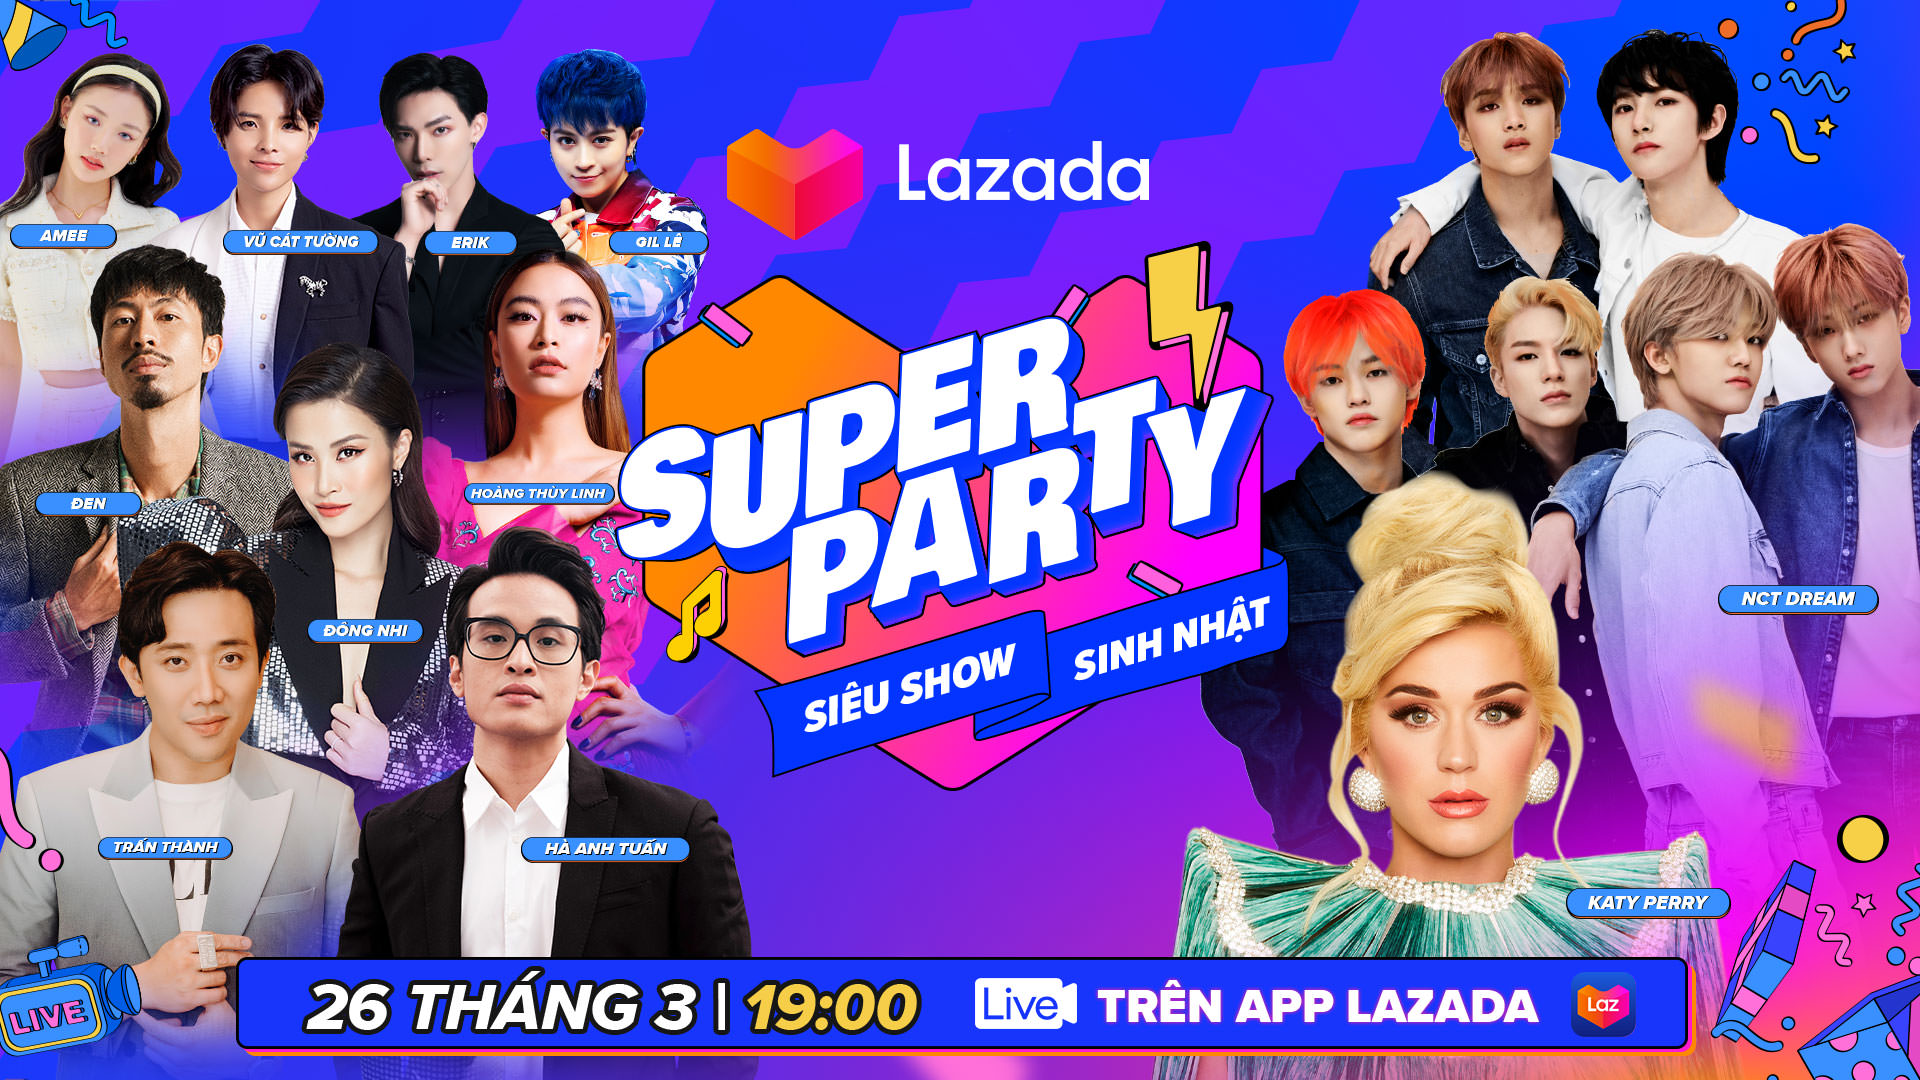 Lazada tổ chức tiệc sinh nhật lần thứ 9 với hàng triệu ưu đãi hấp dẫn cho người dùng Việt